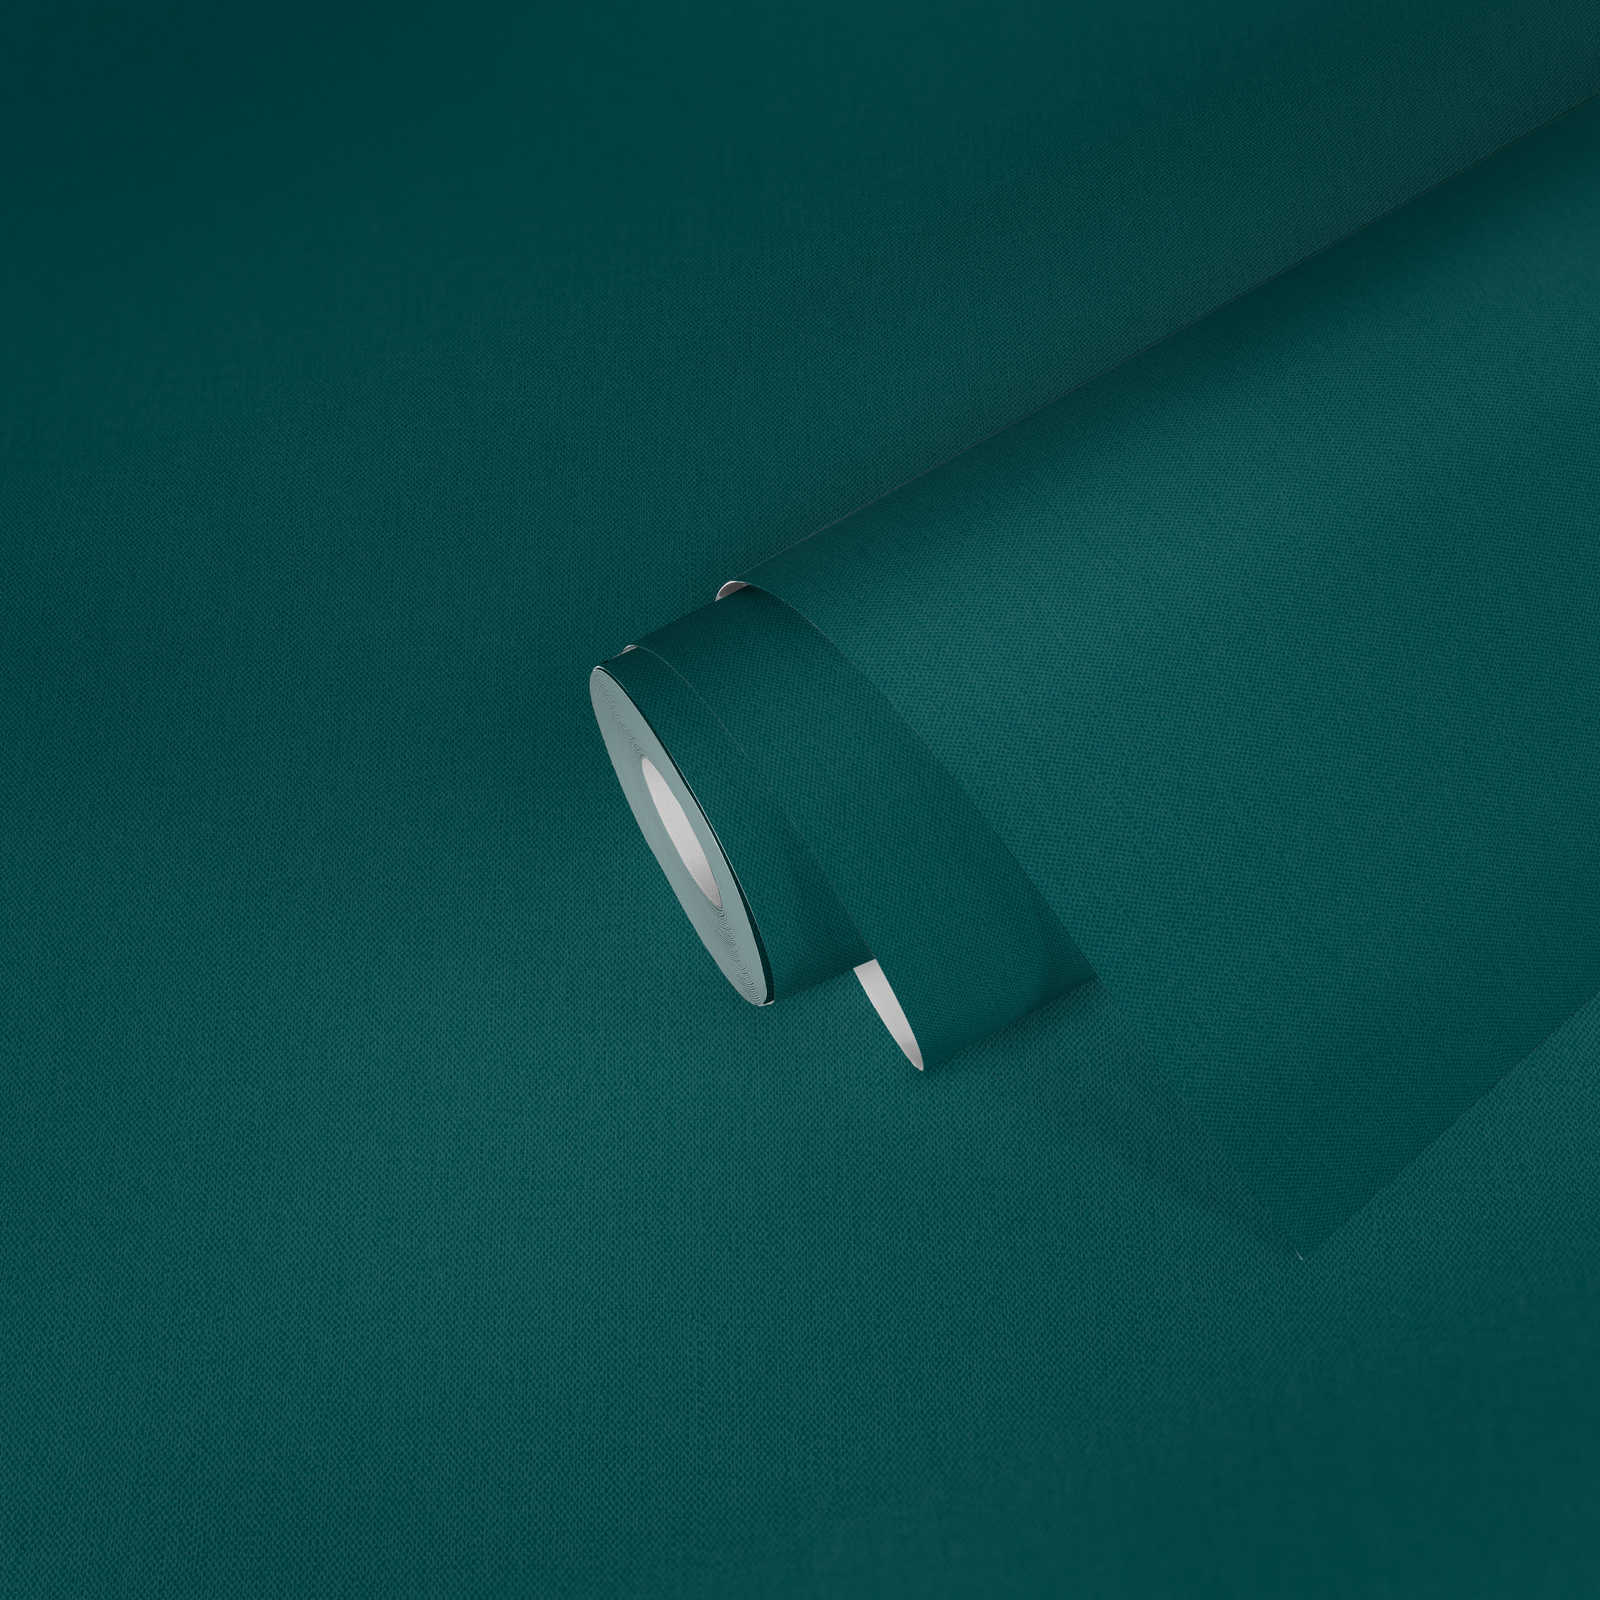             Papier peint vert foncé avec structure textile bleu d'eau uni mat
        